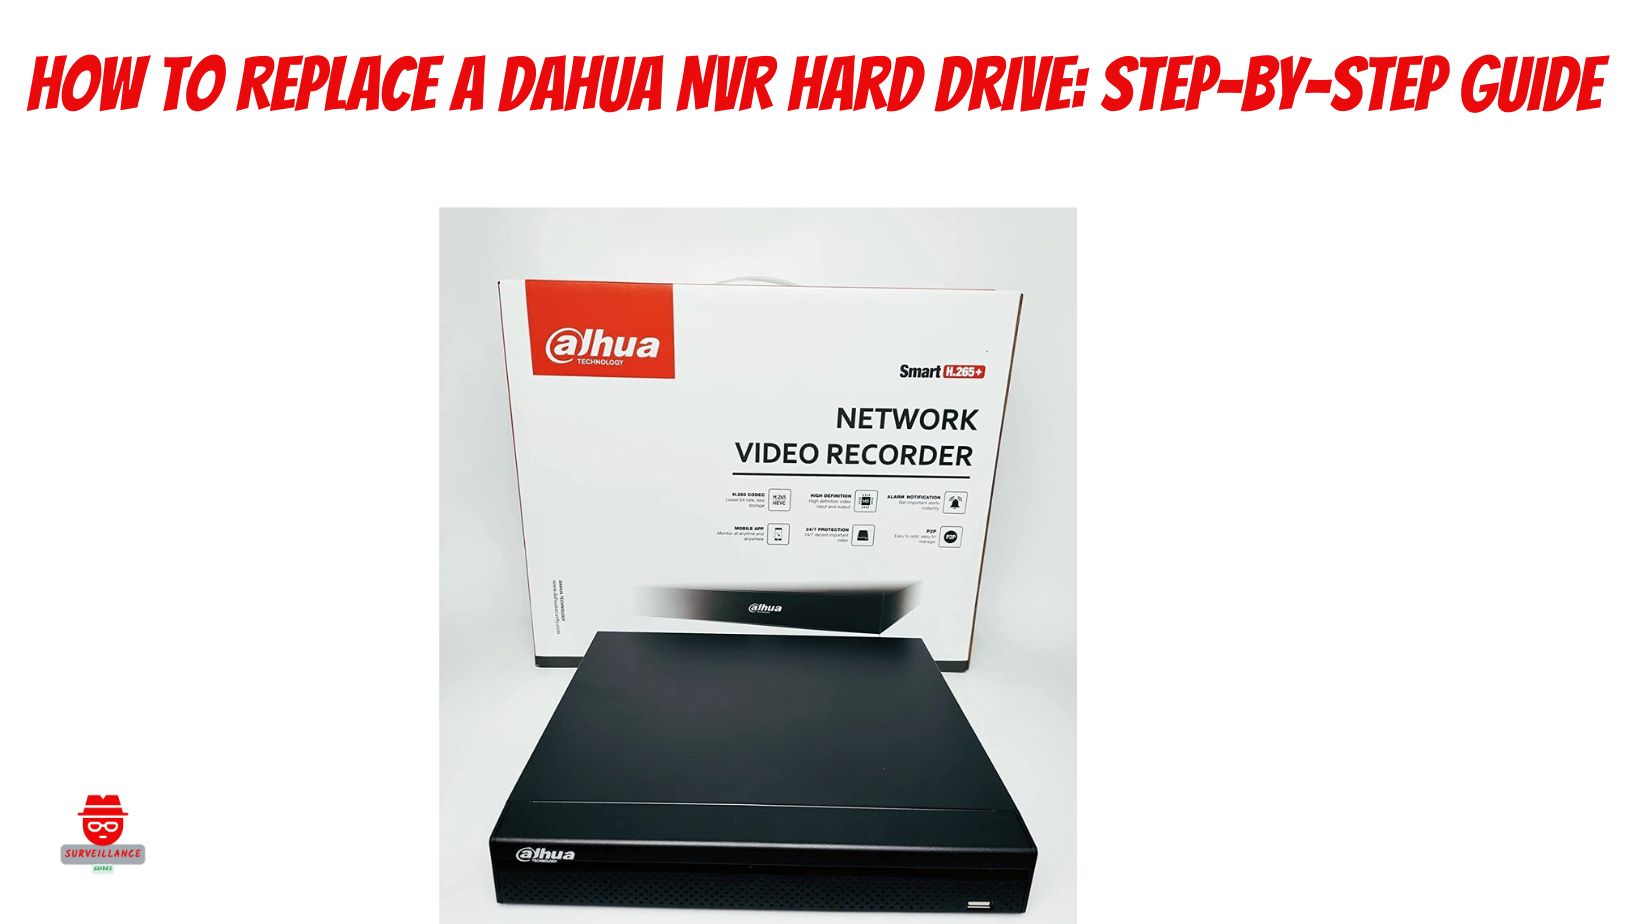 Dahua NVR hard drive replacement